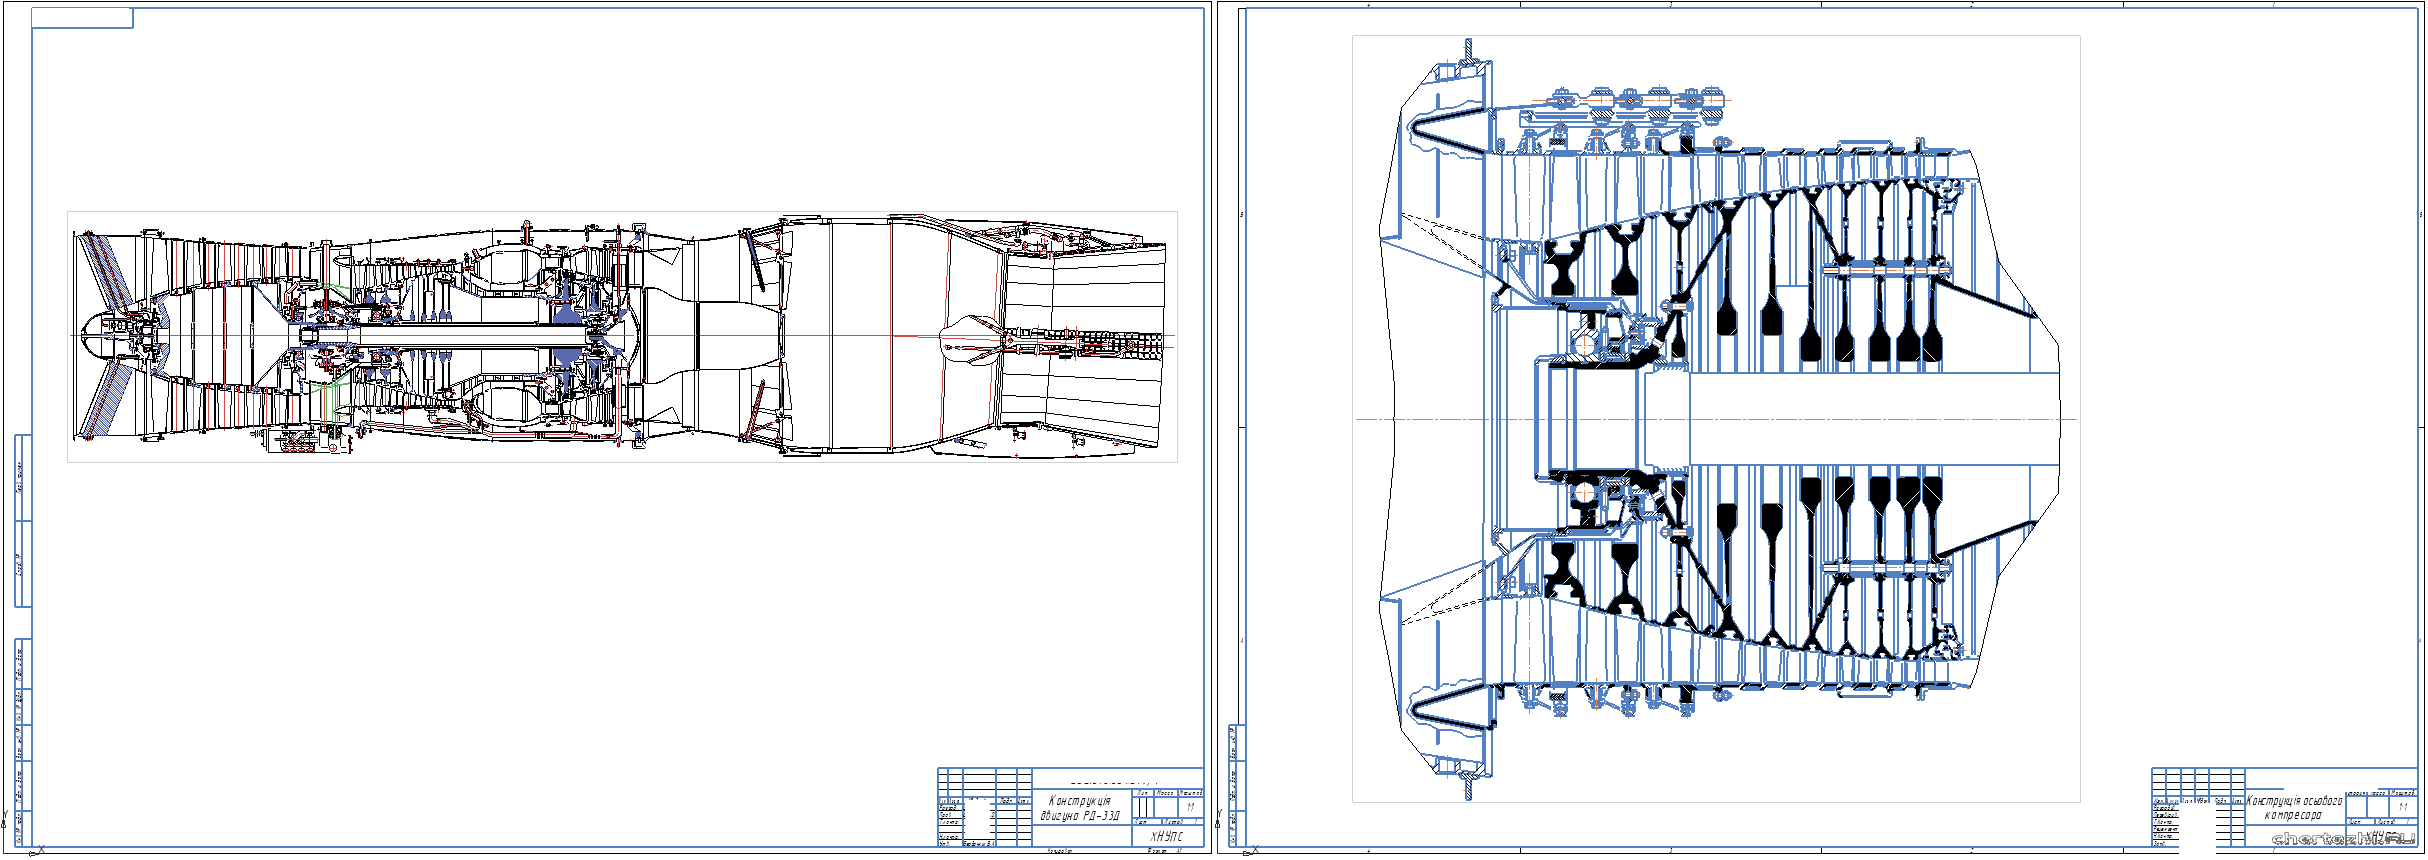 Курсовий проект - Iнженерний аналіз особливостей конструкції літака Миг-29 з силовою установкою РД-33